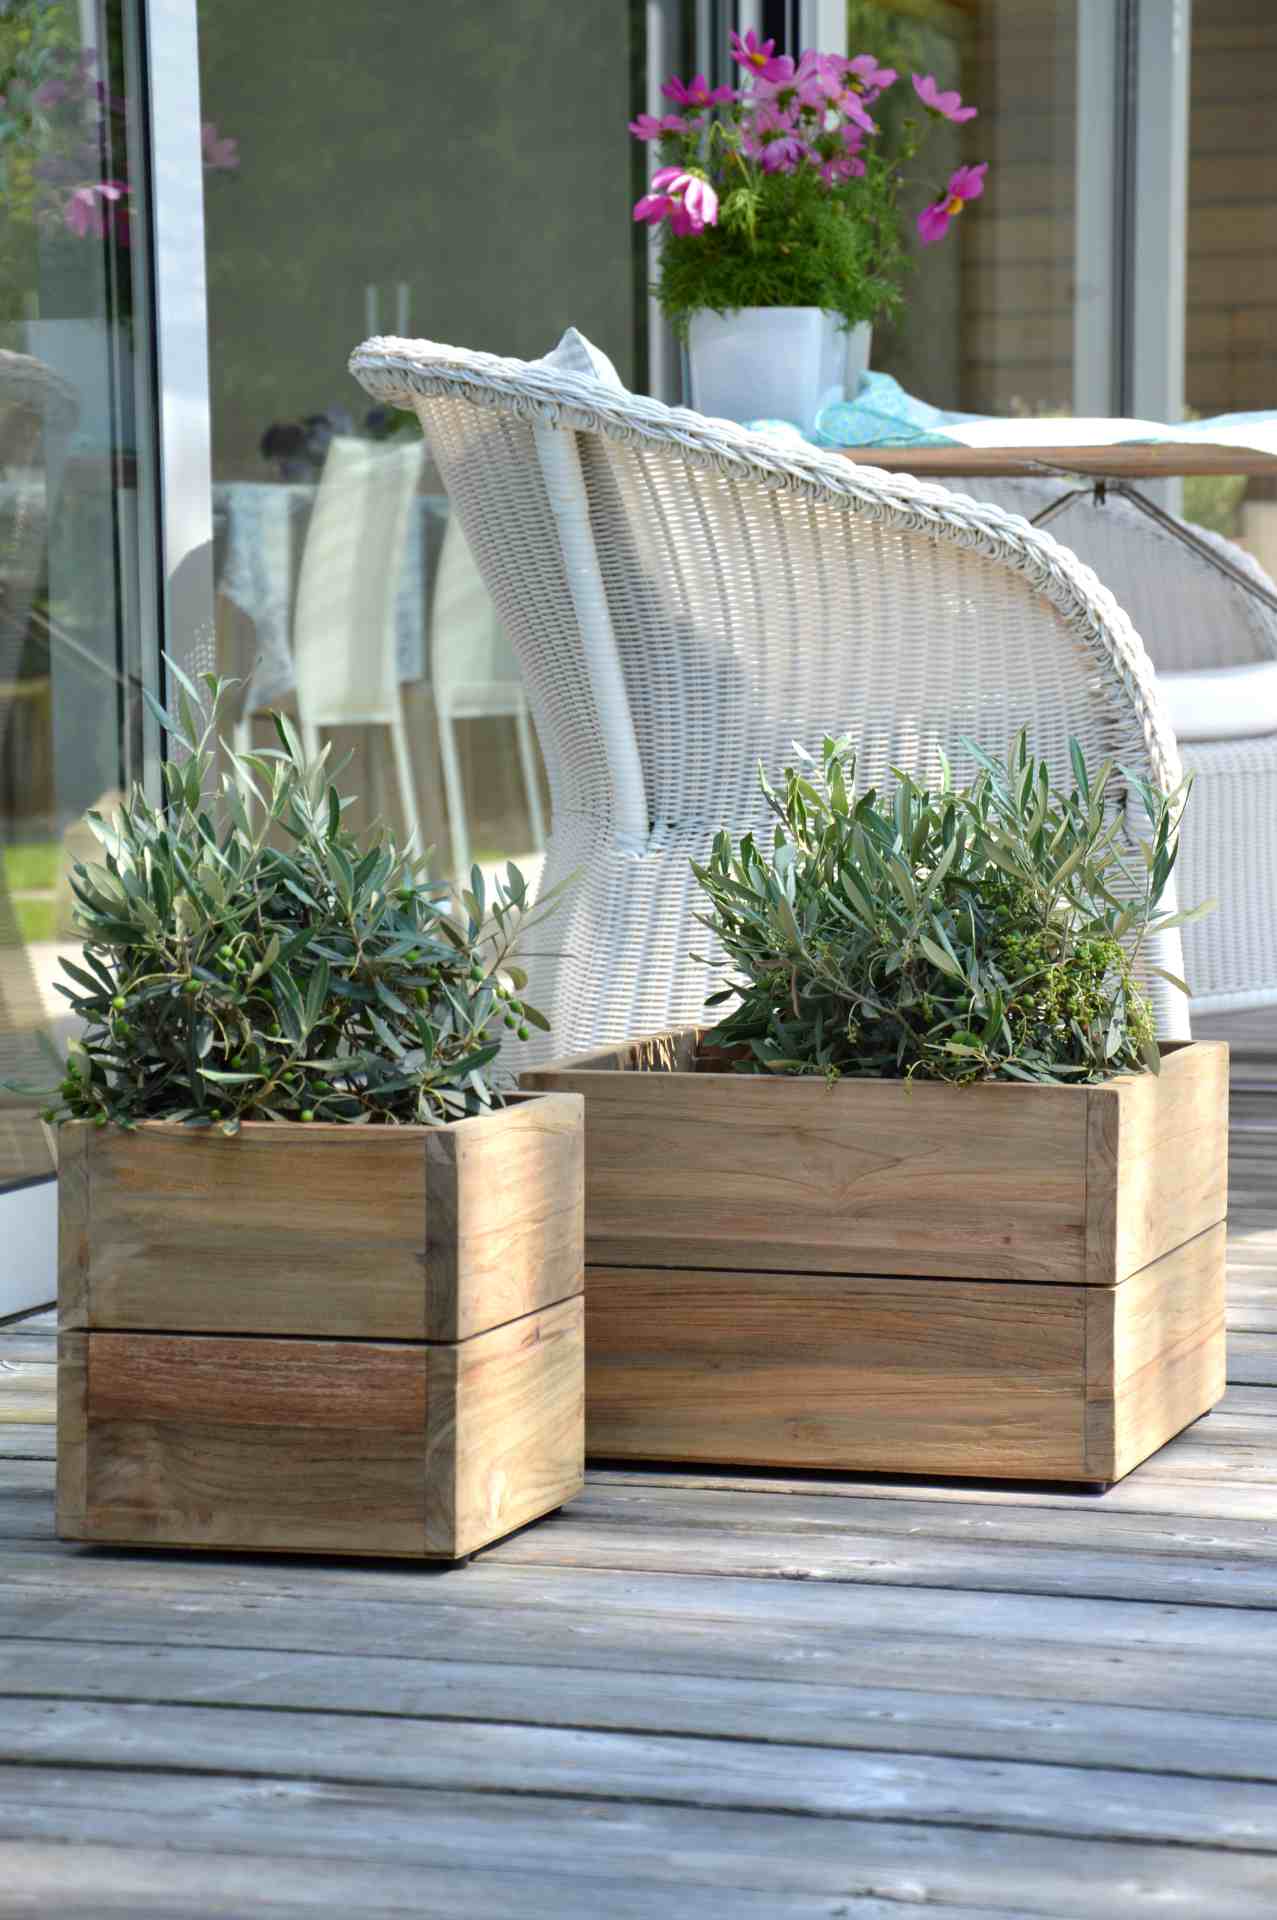 Der Pflanzenbehälter Mini Garden Container wurde aus massivem Holz gefertigt. Das moderne Design wurde von der Marke Jan Kurtz entwickelt.